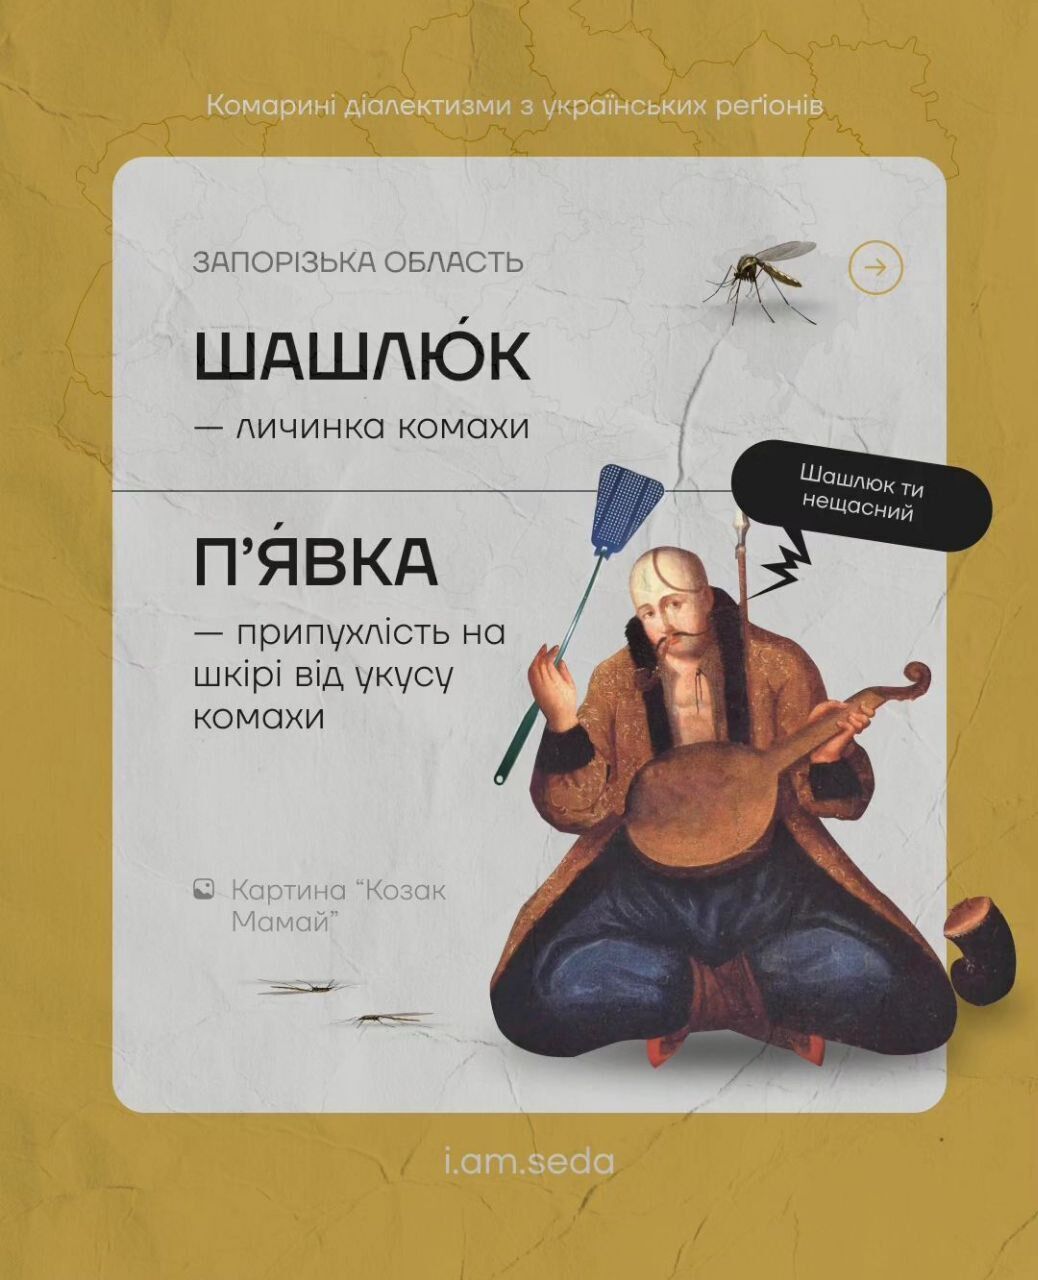 Цинцар, овадня и лярва: что общего в украинских ''комариных диалектизмах''